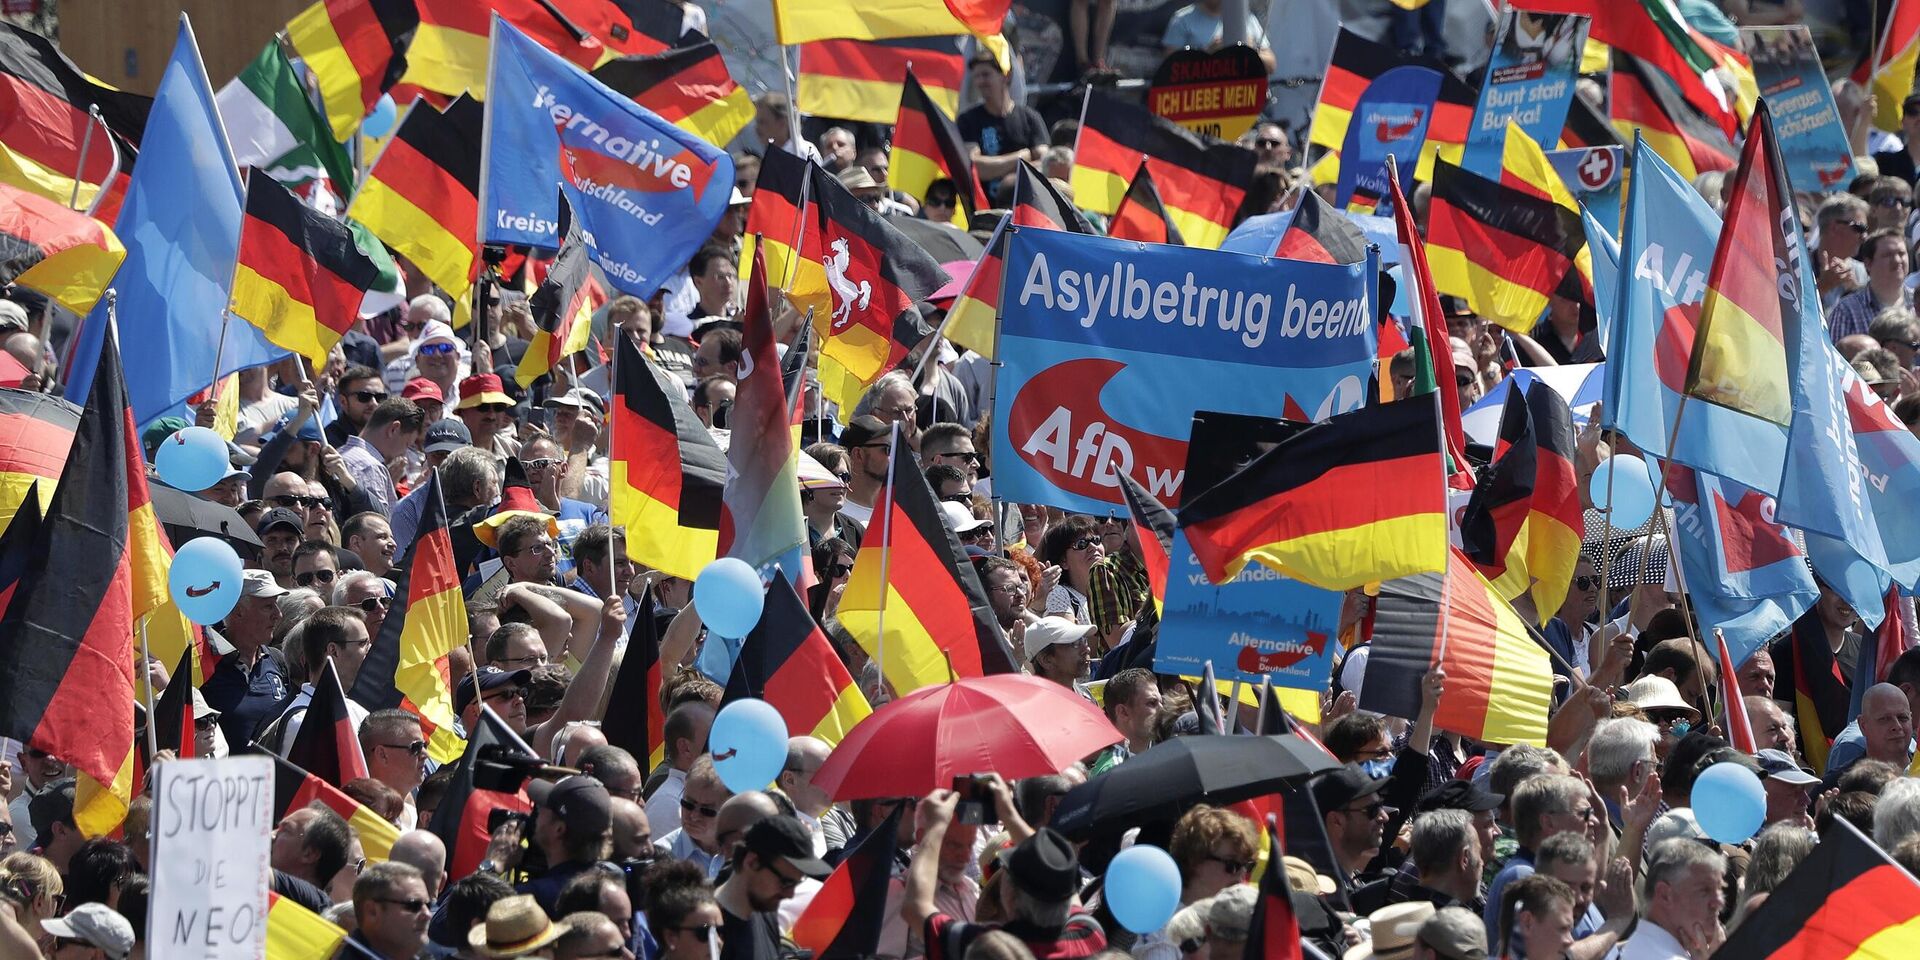 Сторонники партии Альтернатива для Германии на митинге в Берлине, Германия. 27 мая 2018 года - ИноСМИ, 1920, 19.01.2024